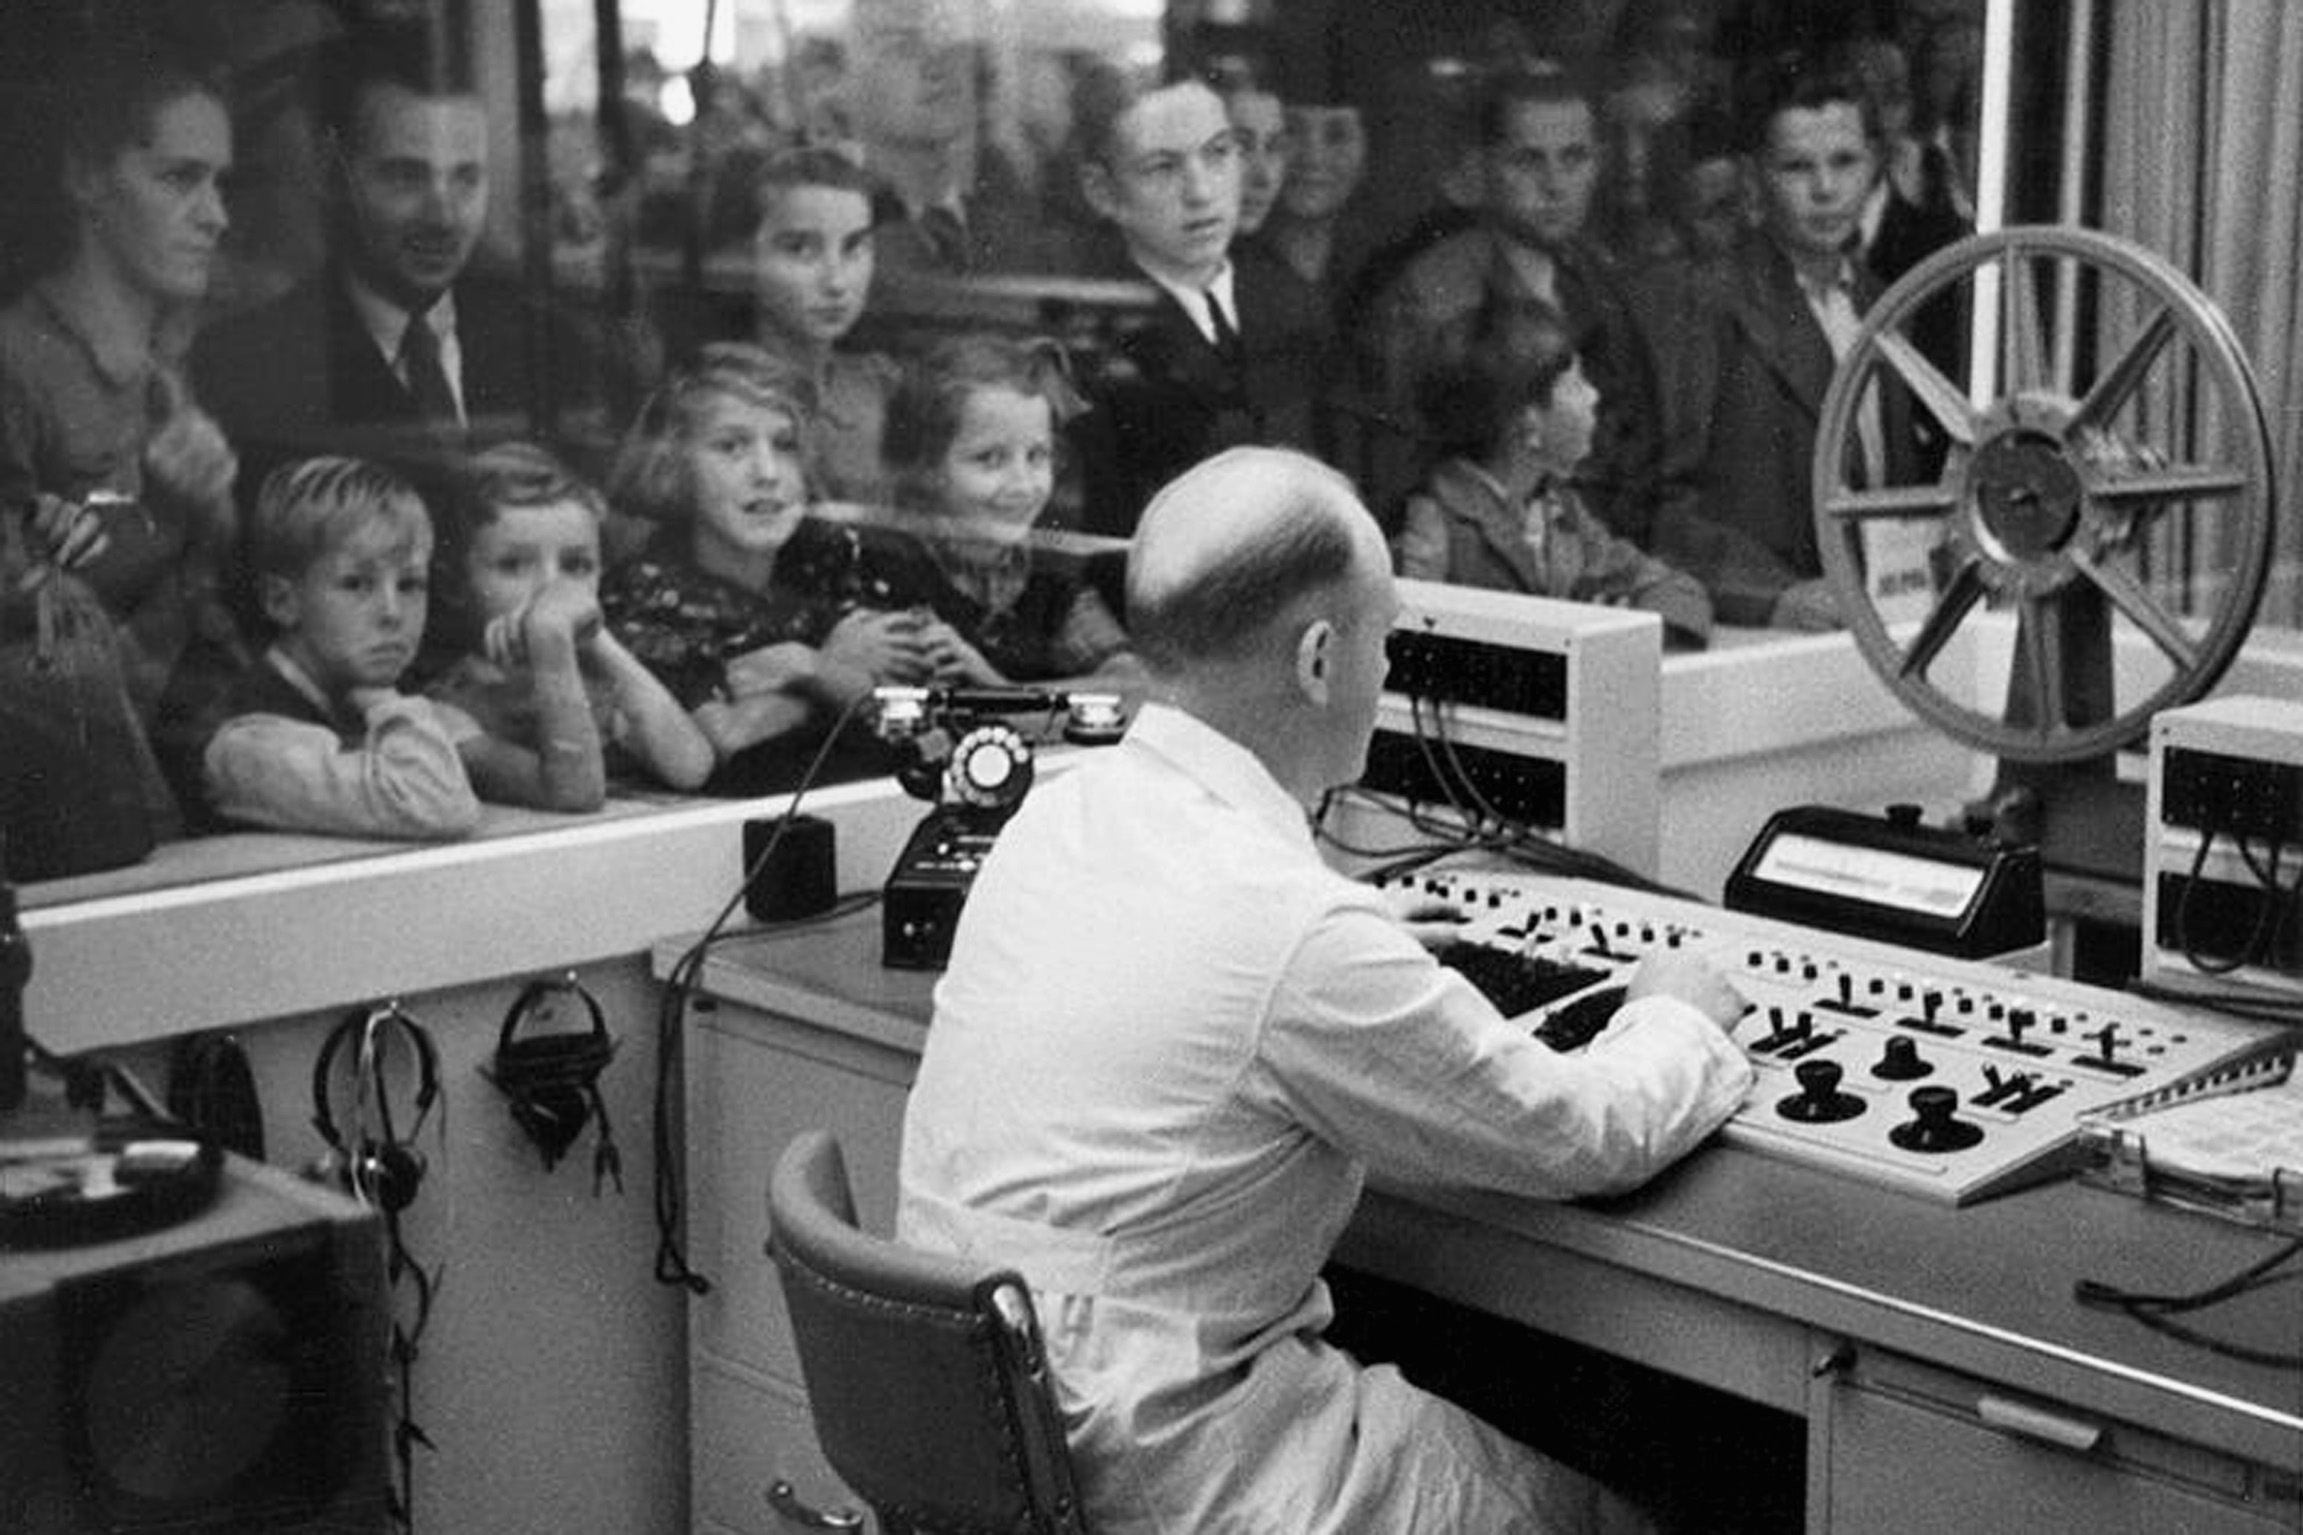 UNESCO-Welttag des audiovisuellen ErbesChronik, historische Aufnahme50 Jahre SF DRSRadiostudio an der Landi, 1939Der Techniker am Mischpult wird vom Publikum bestauntCopyright: SRF